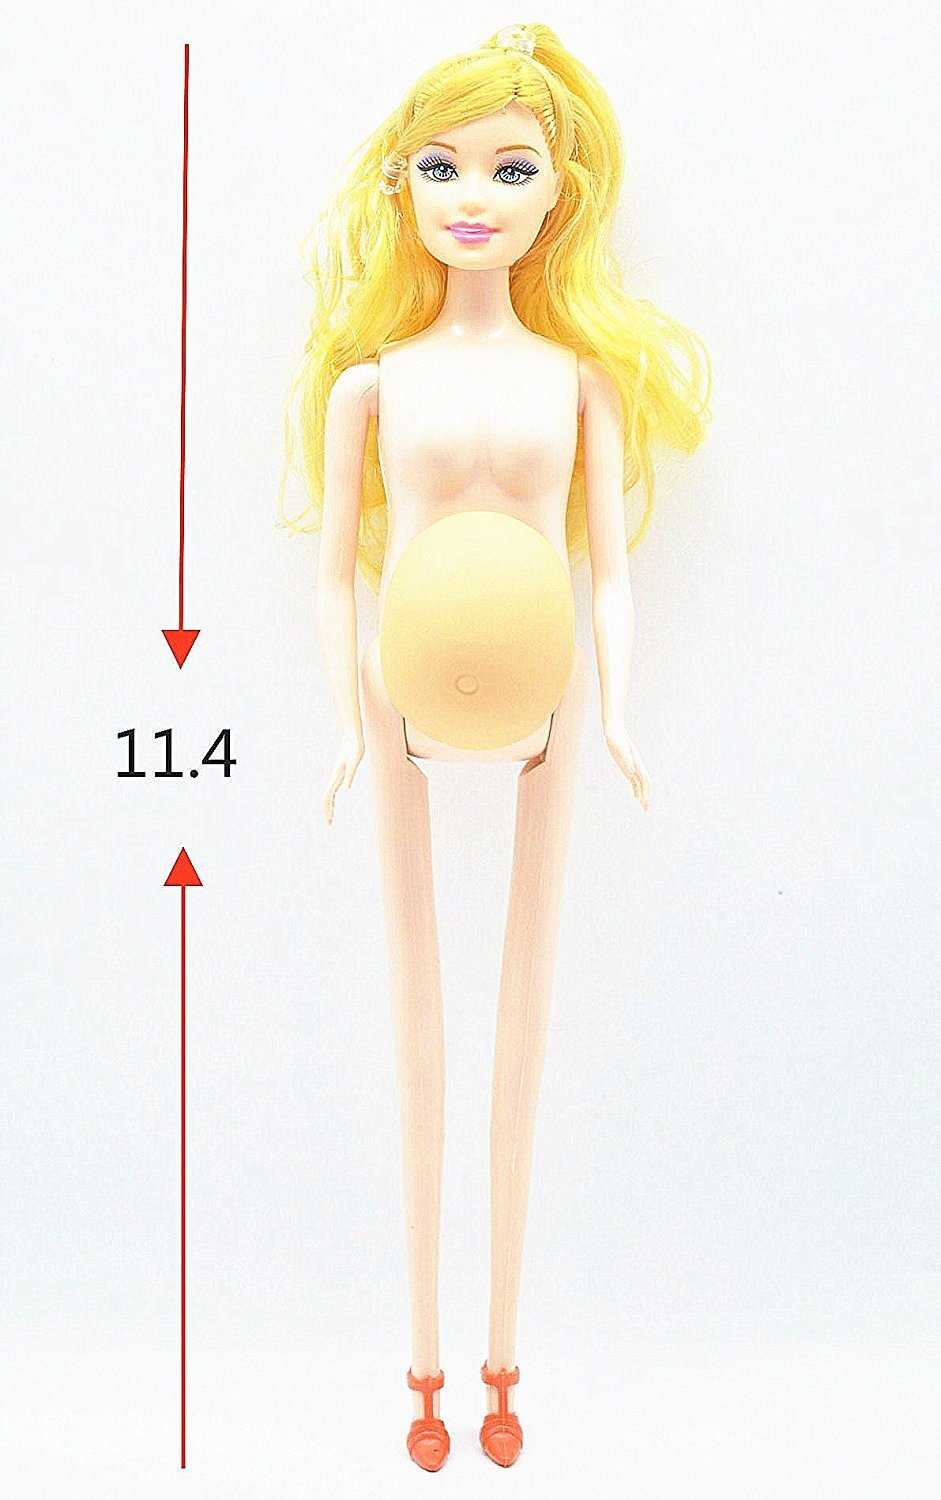 Барби – роженица: в Китае продают куклу с младенцем в животике